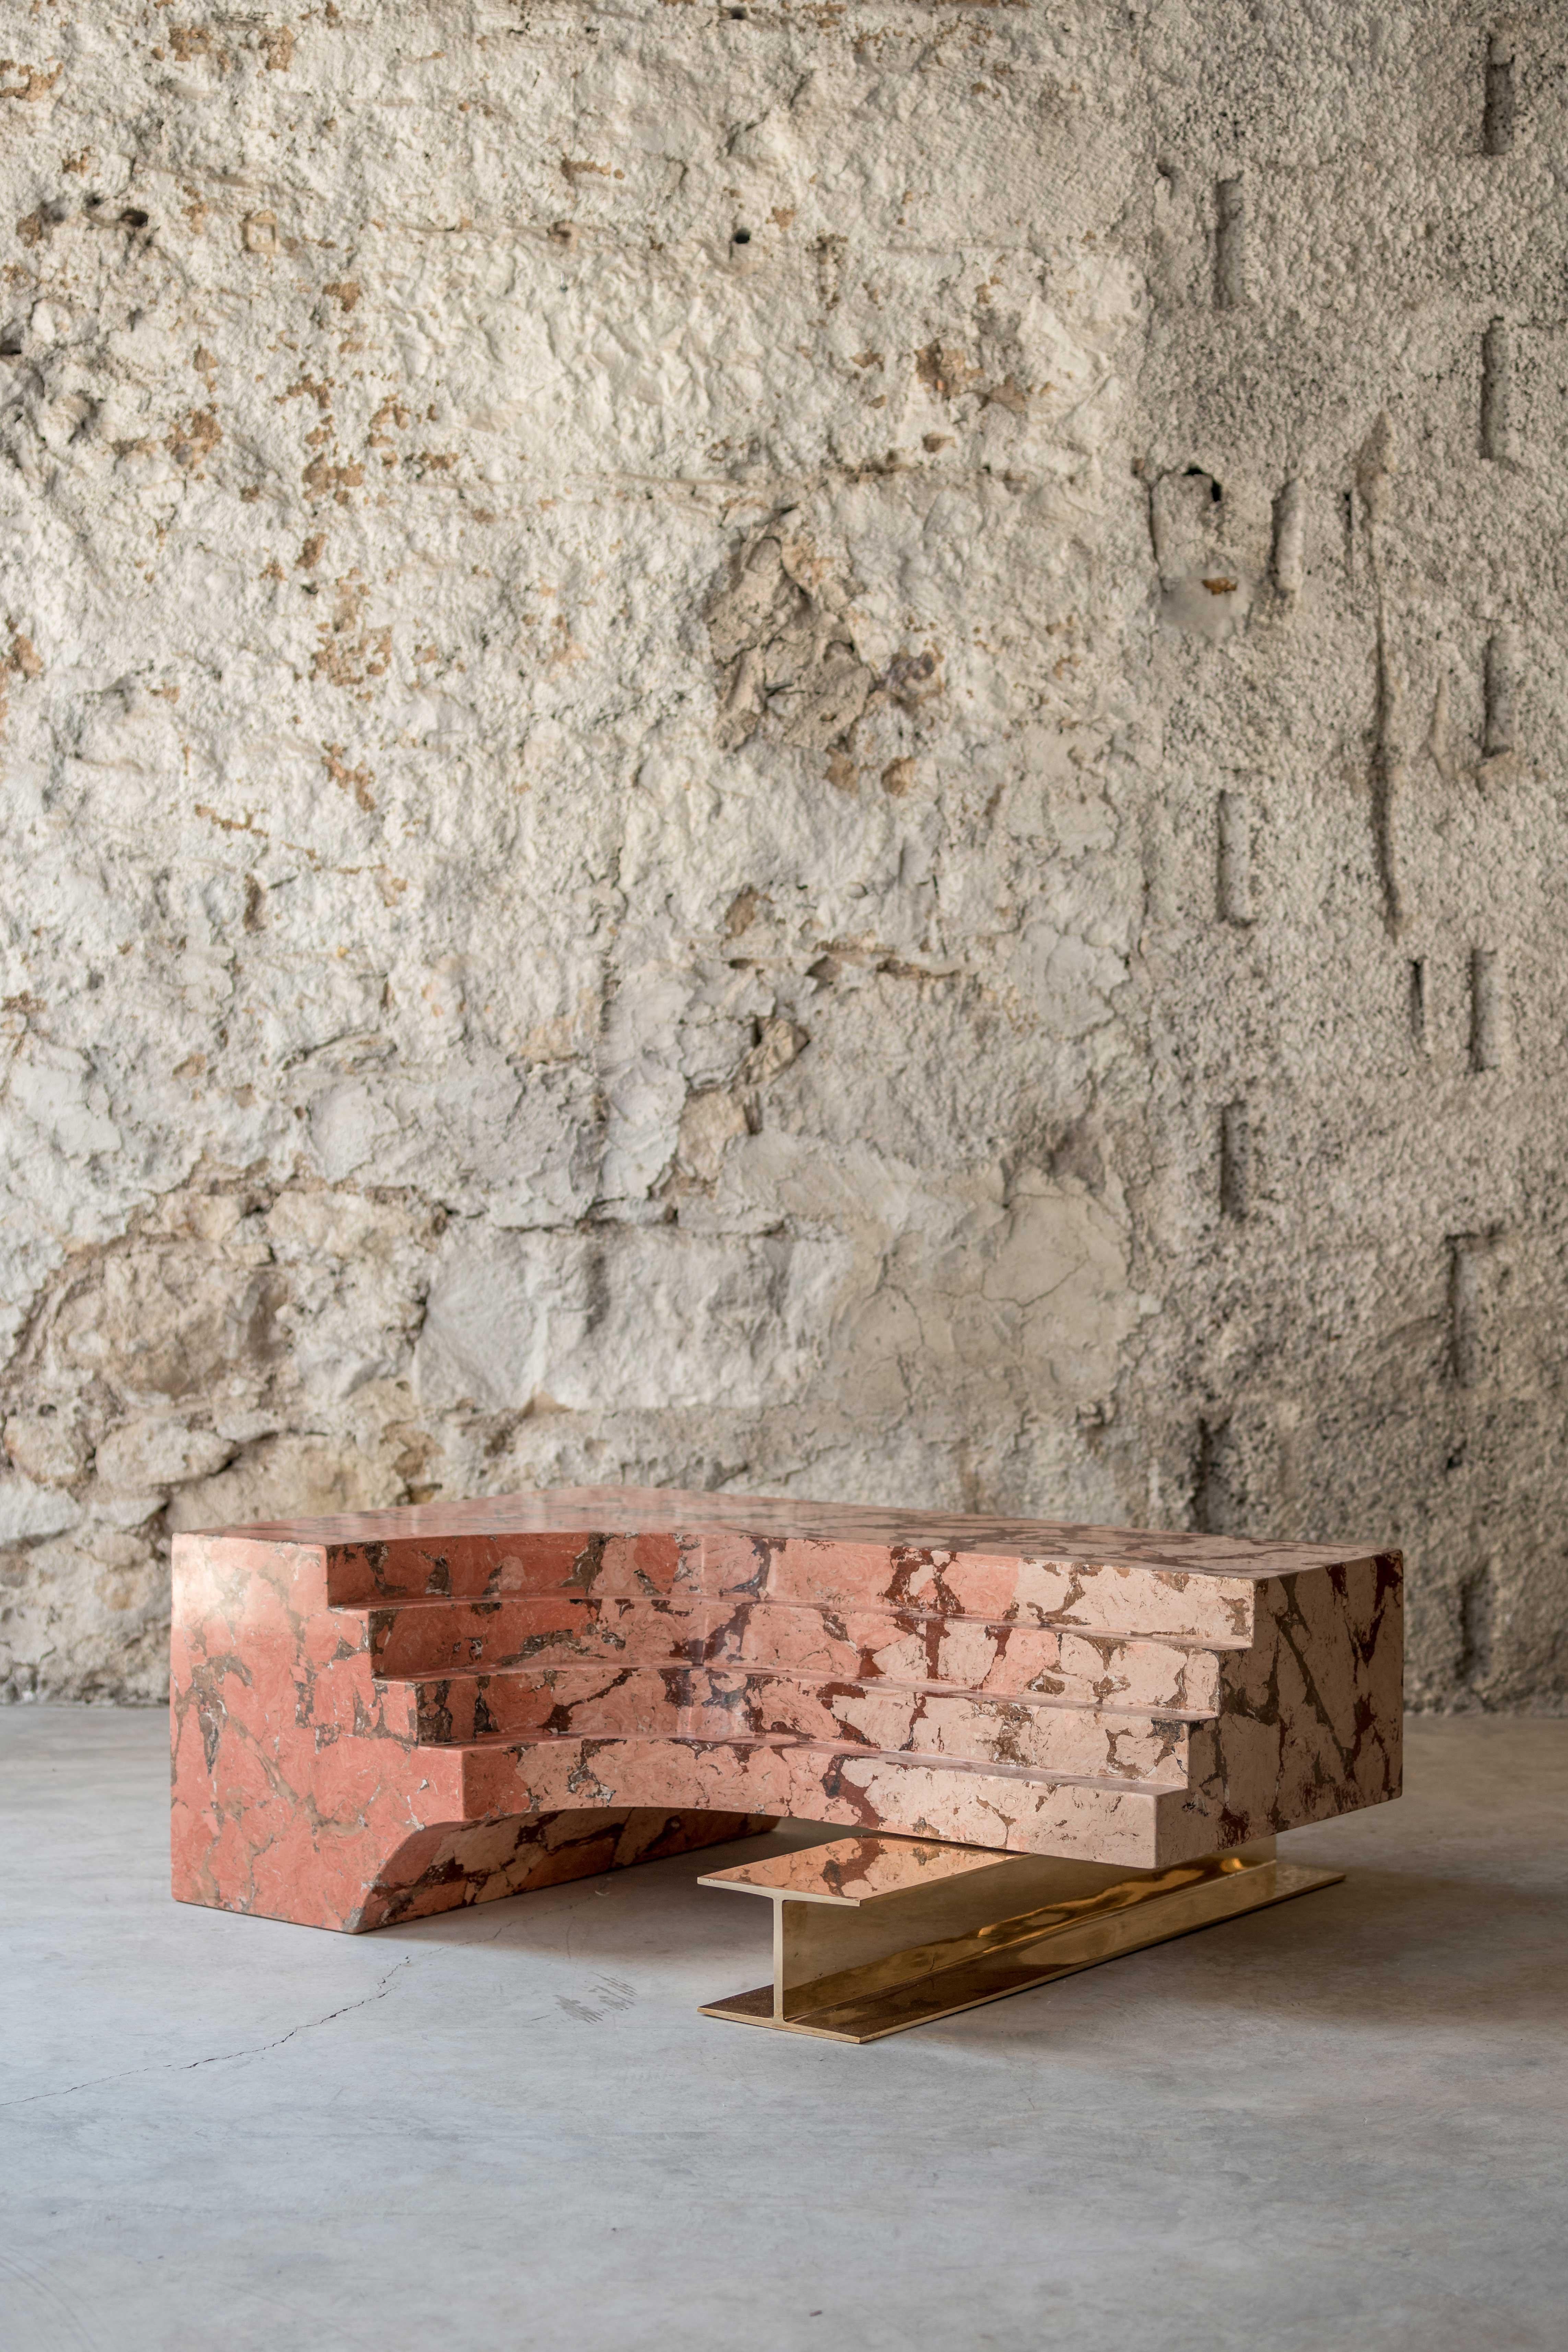 Ruines de Roberto Sironi est une série d'œuvres qui re-signifient des fragments architecturaux appartenant à différentes périodes historiques et à de grands sites archéologiques, en modelant les formes selon de nouvelles représentations esthétiques.